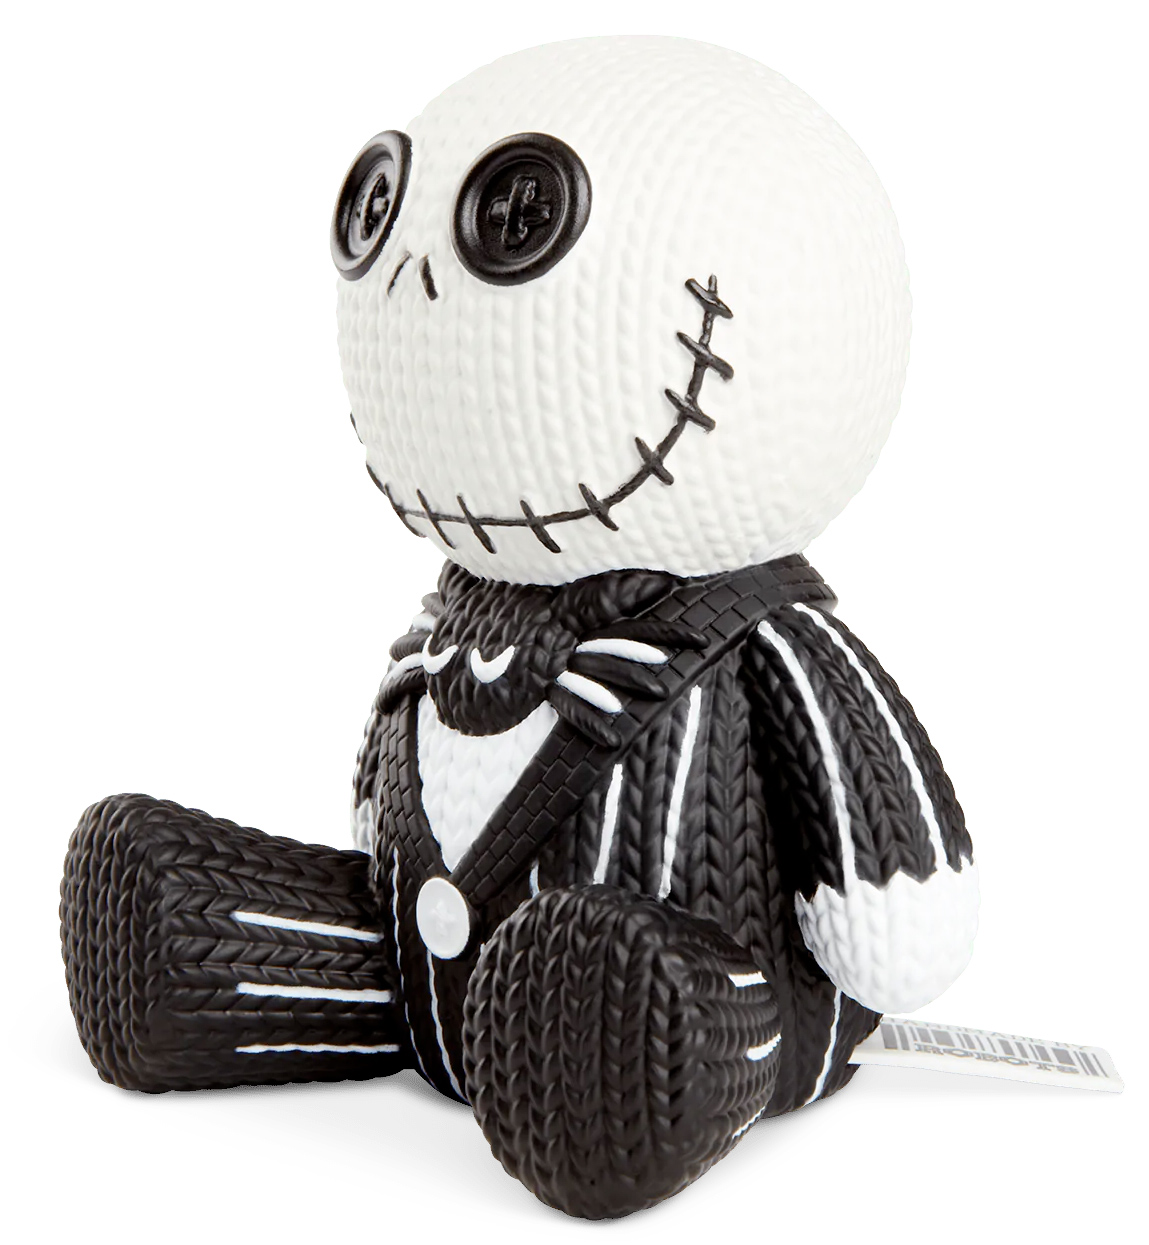 Jack Skellington Handmade By Robots - Boneco de Vinil Fosforescente no Estilo Crochê Amigurumi